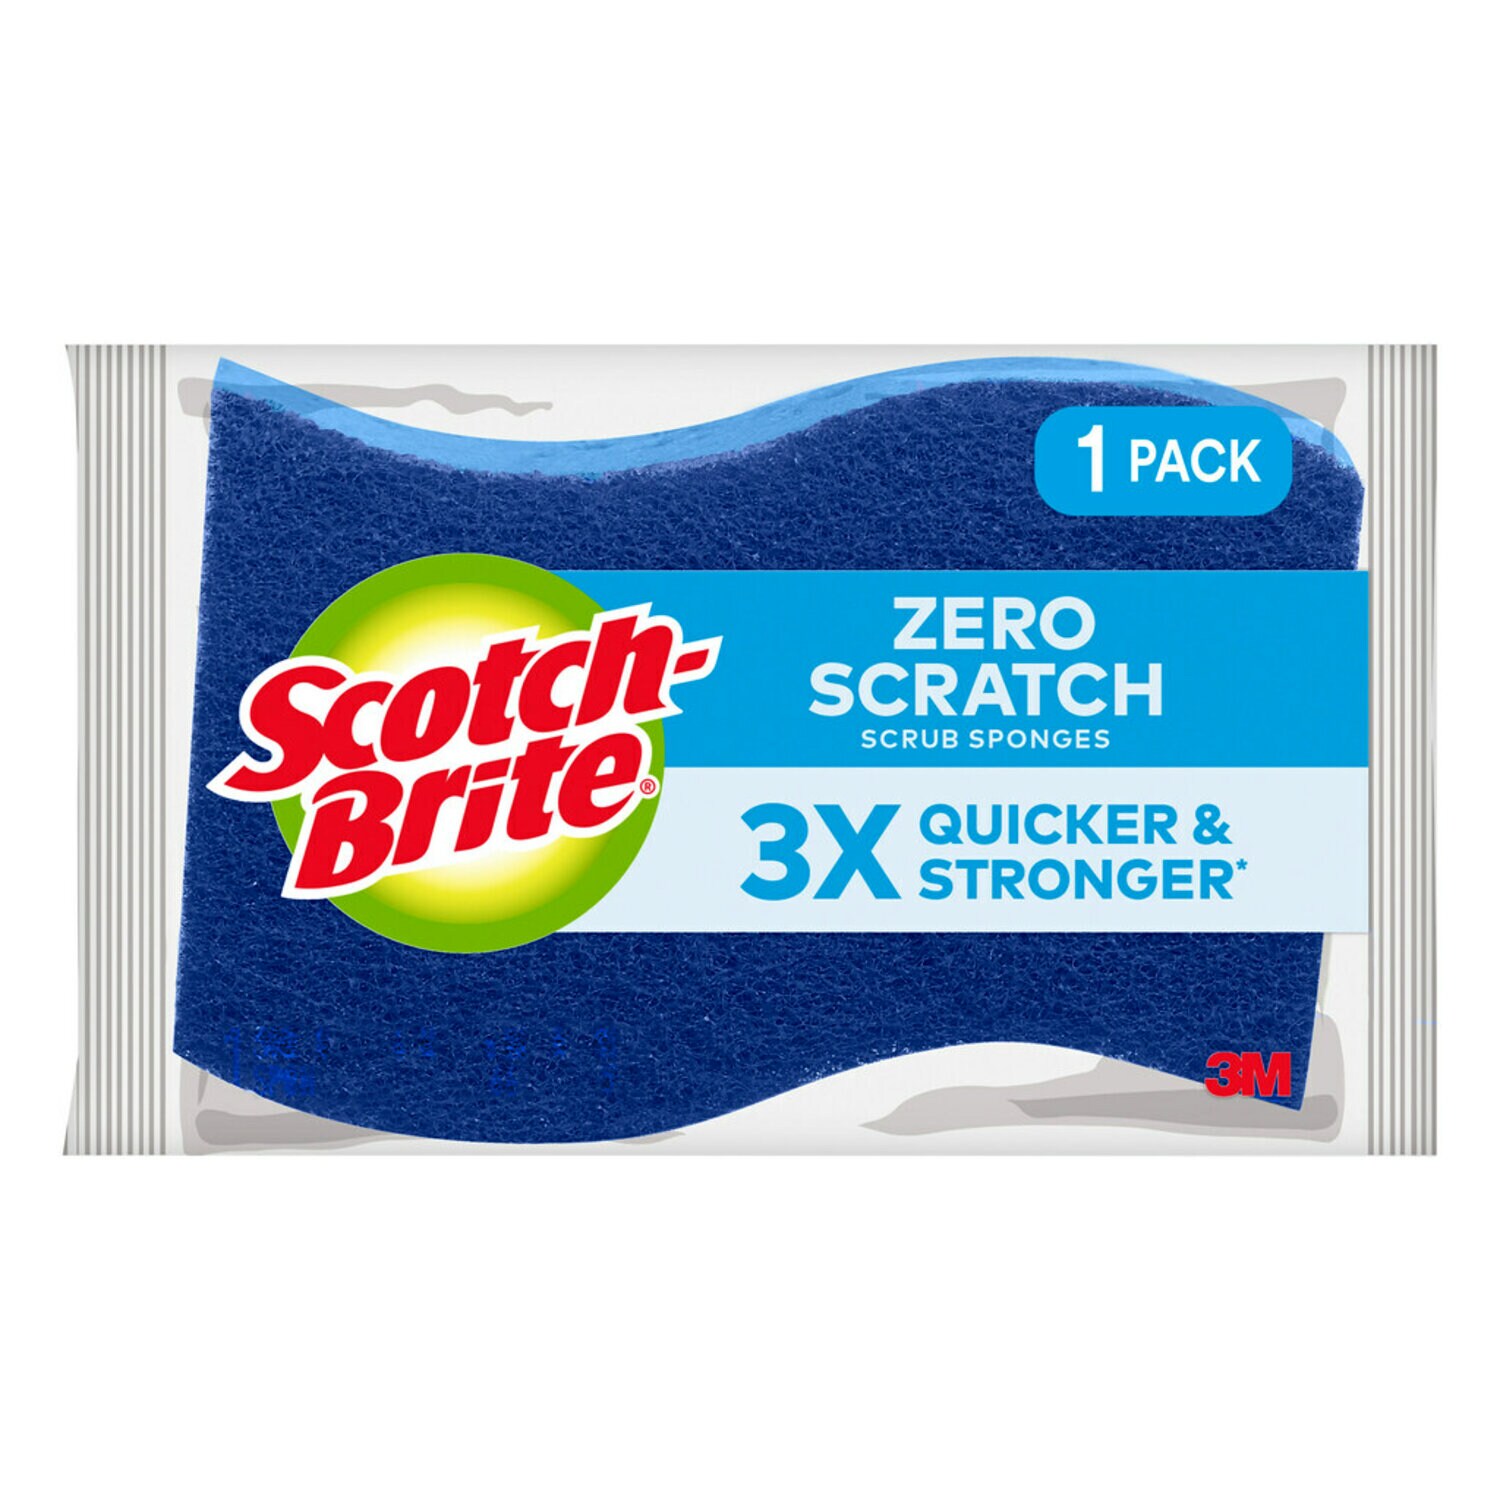 7100019516 - Scotch-Brite Zero Scratch Scrub Sponge 521, 12/1